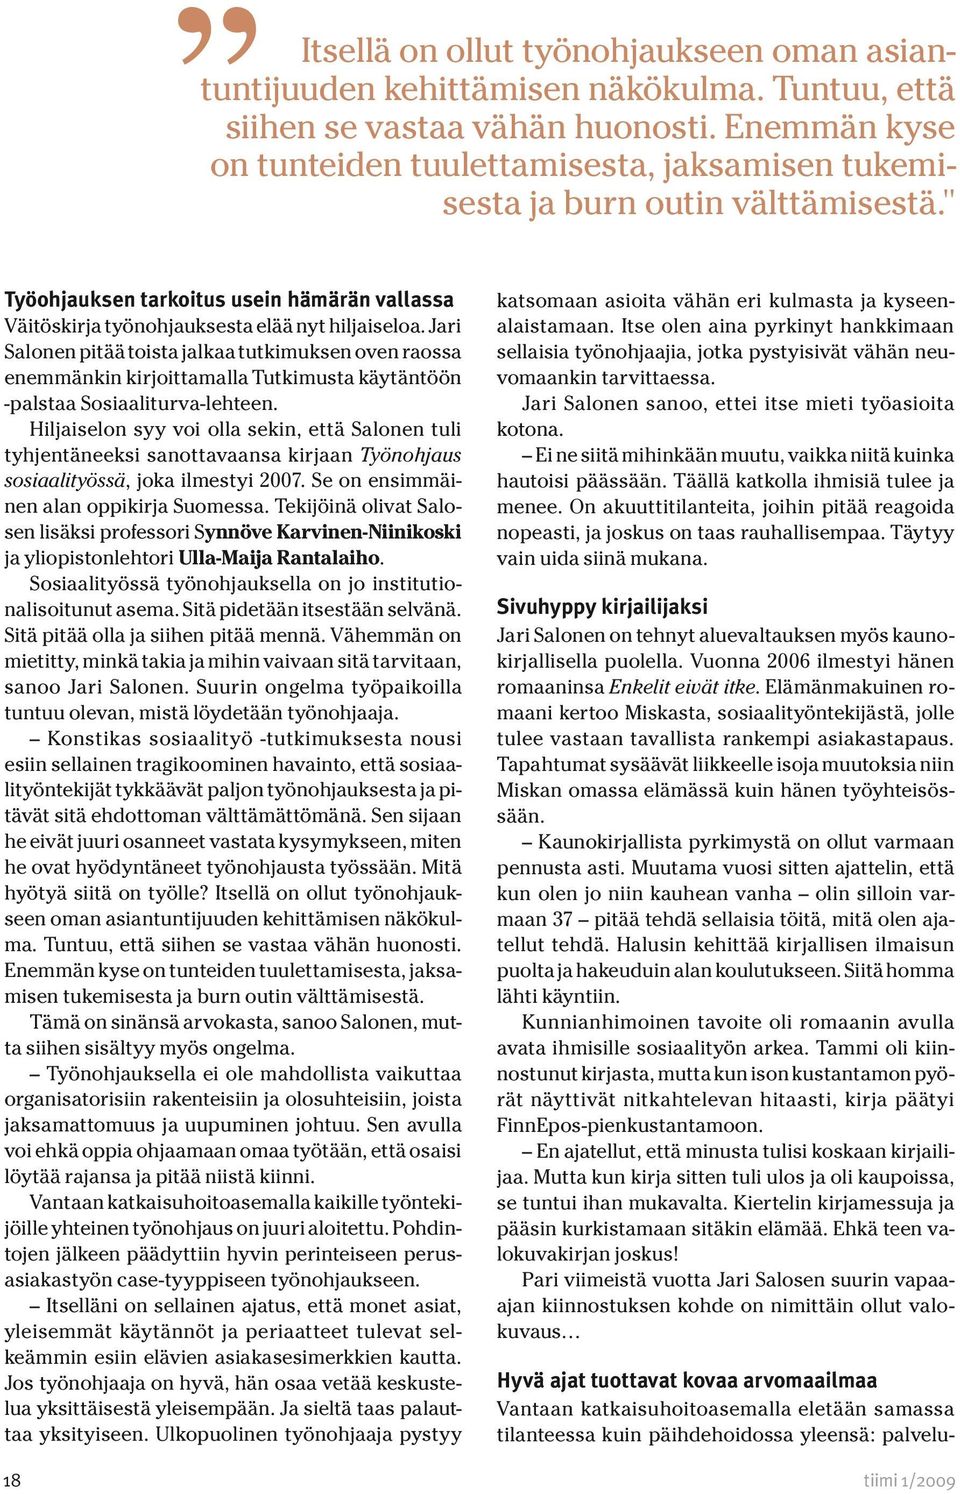 Jari Salonen pitää toista jalkaa tutkimuksen oven raossa enemmänkin kirjoittamalla Tutkimusta käytäntöön -palstaa Sosiaaliturva-lehteen.